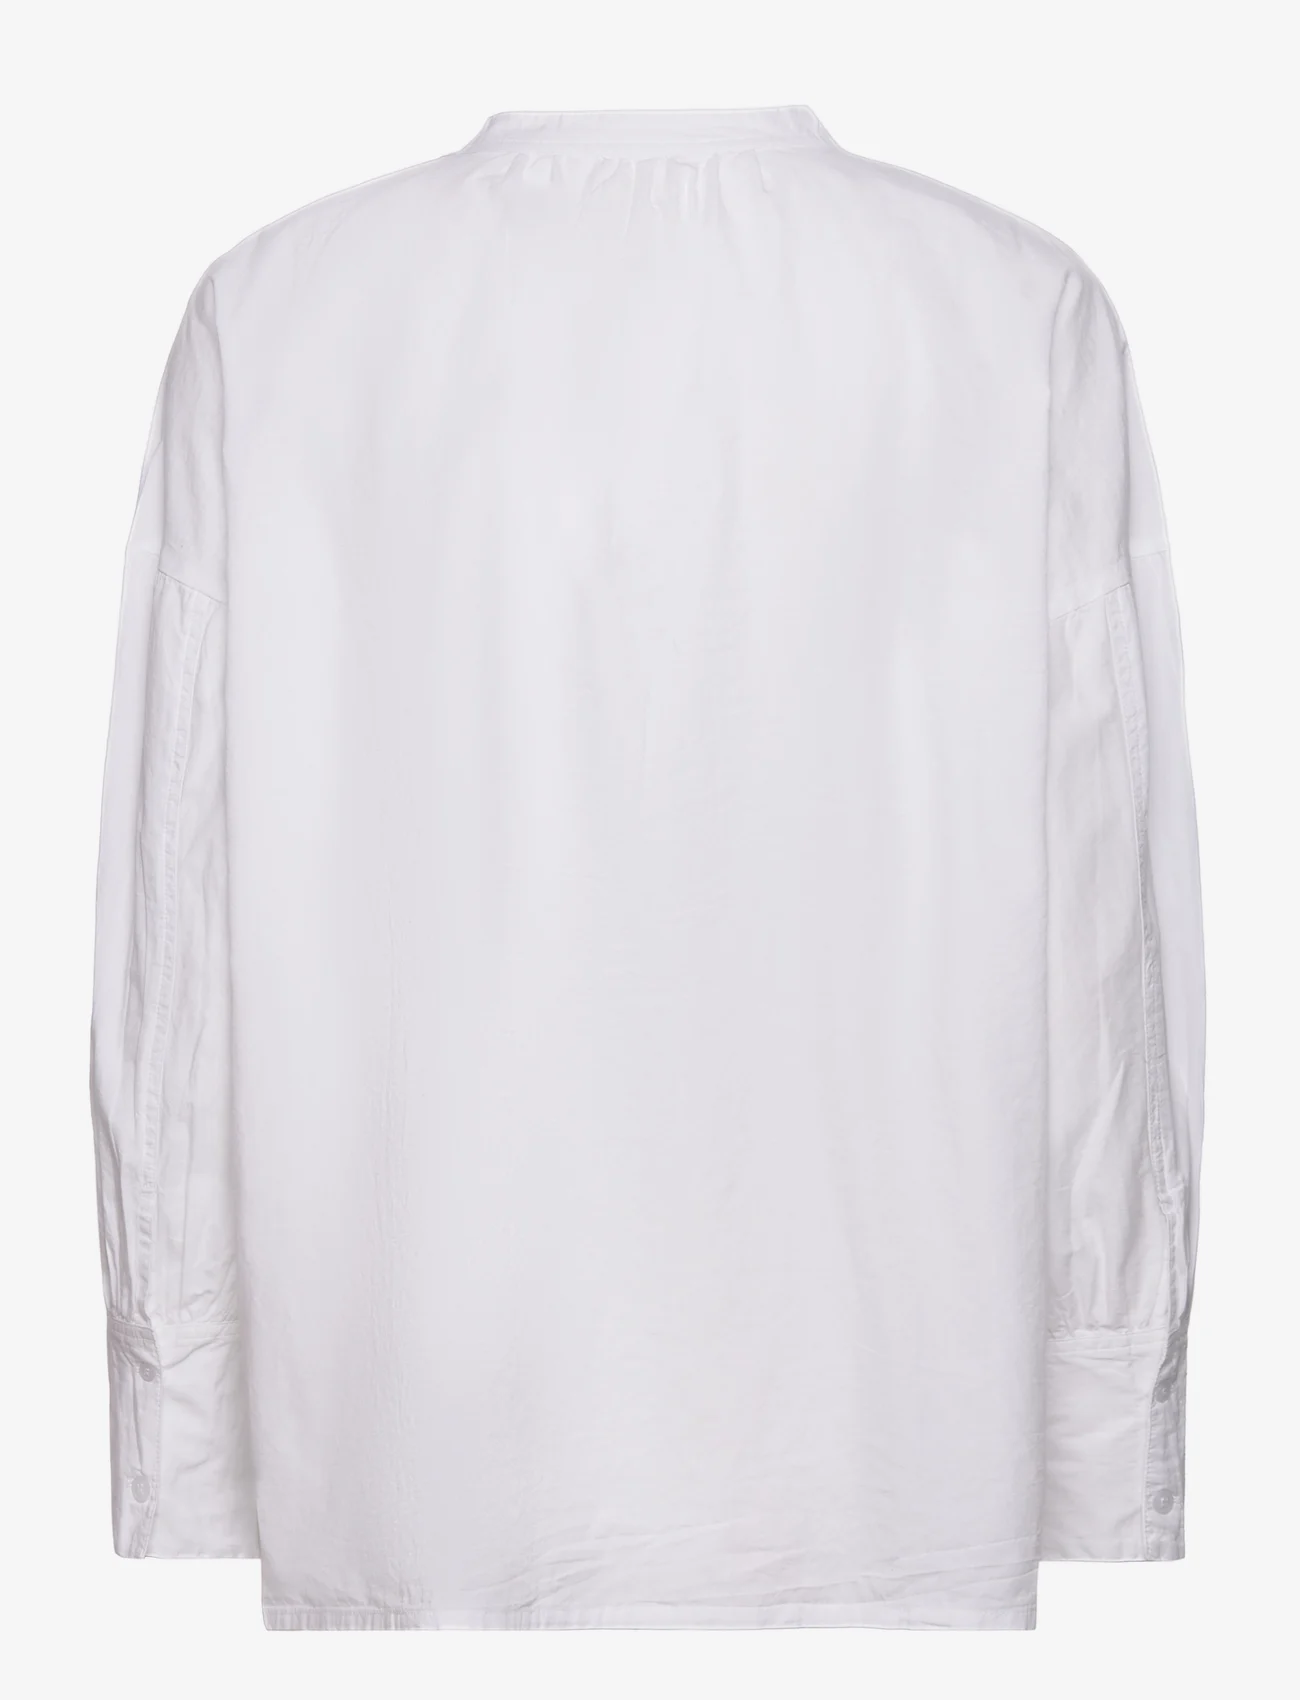 Moshi Moshi Mind - light shirt poplin - koszule z długimi rękawami - white - 1